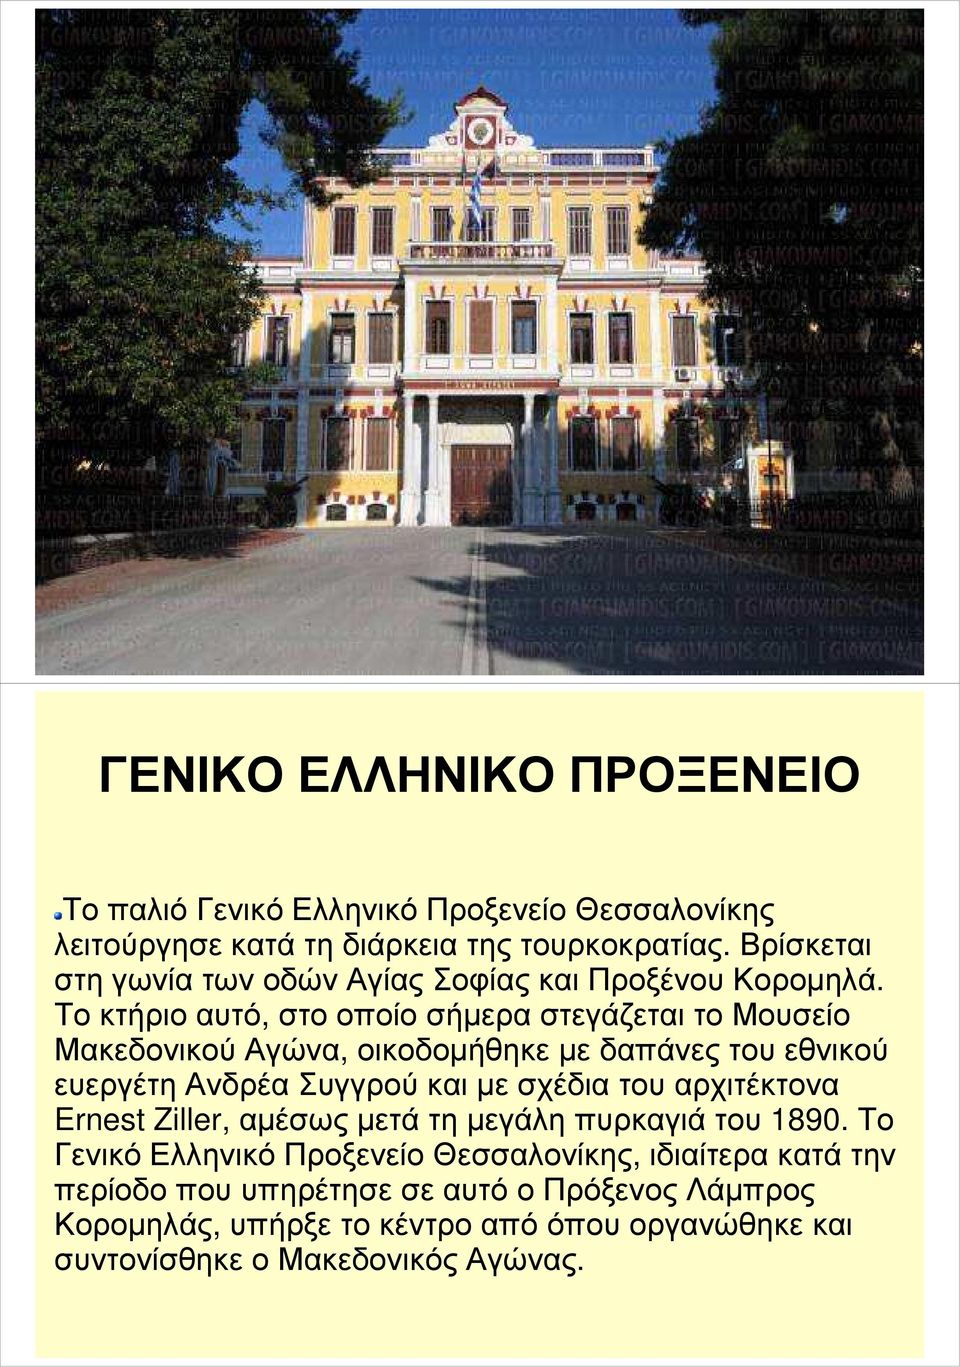 Το κτήριο αυτό, στο οποίο σήµερα στεγάζεται το Μουσείο Μακεδονικού Αγώνα, οικοδοµήθηκε µε δαπάνες του εθνικού ευεργέτη Ανδρέα Συγγρού και µε σχέδια